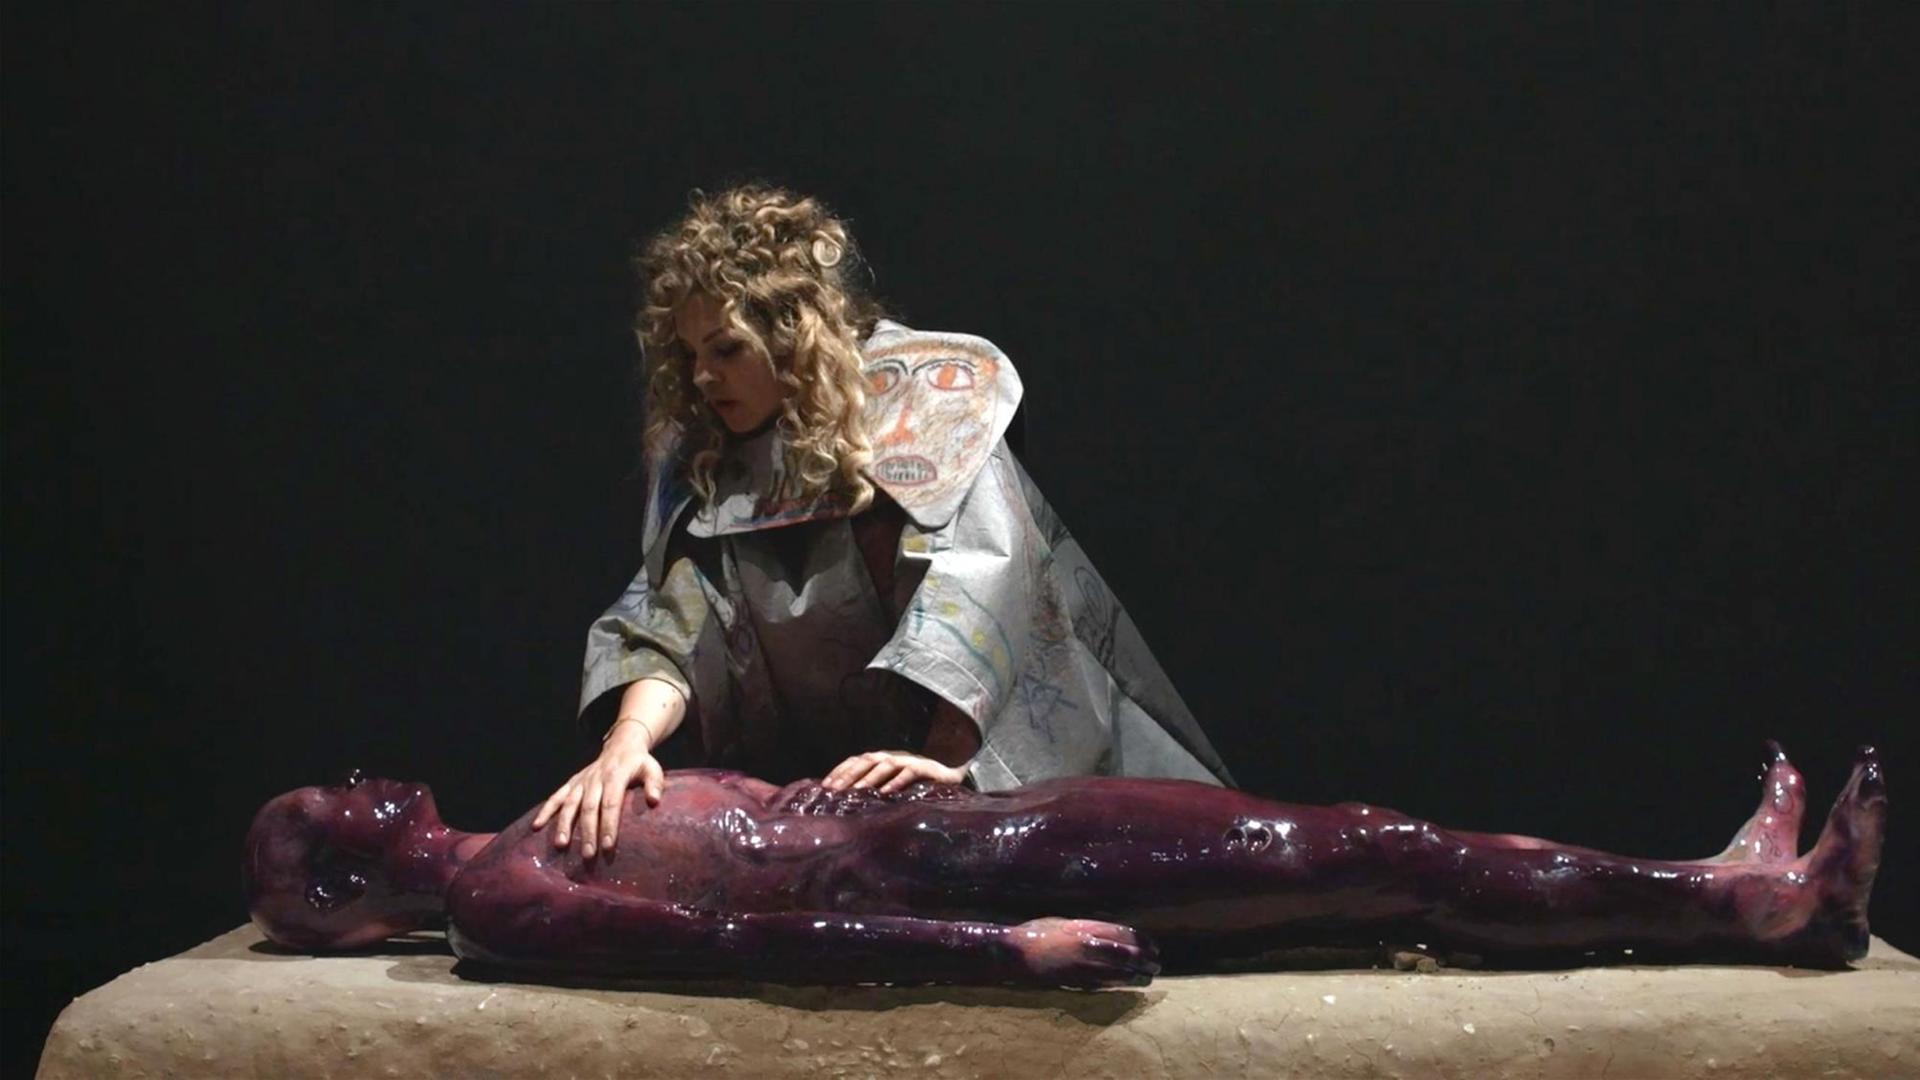 Eine Frau in einer Art Schamanengewand streicht über einen mit dunkelroter Flüssigkeit bedeckten Körper.